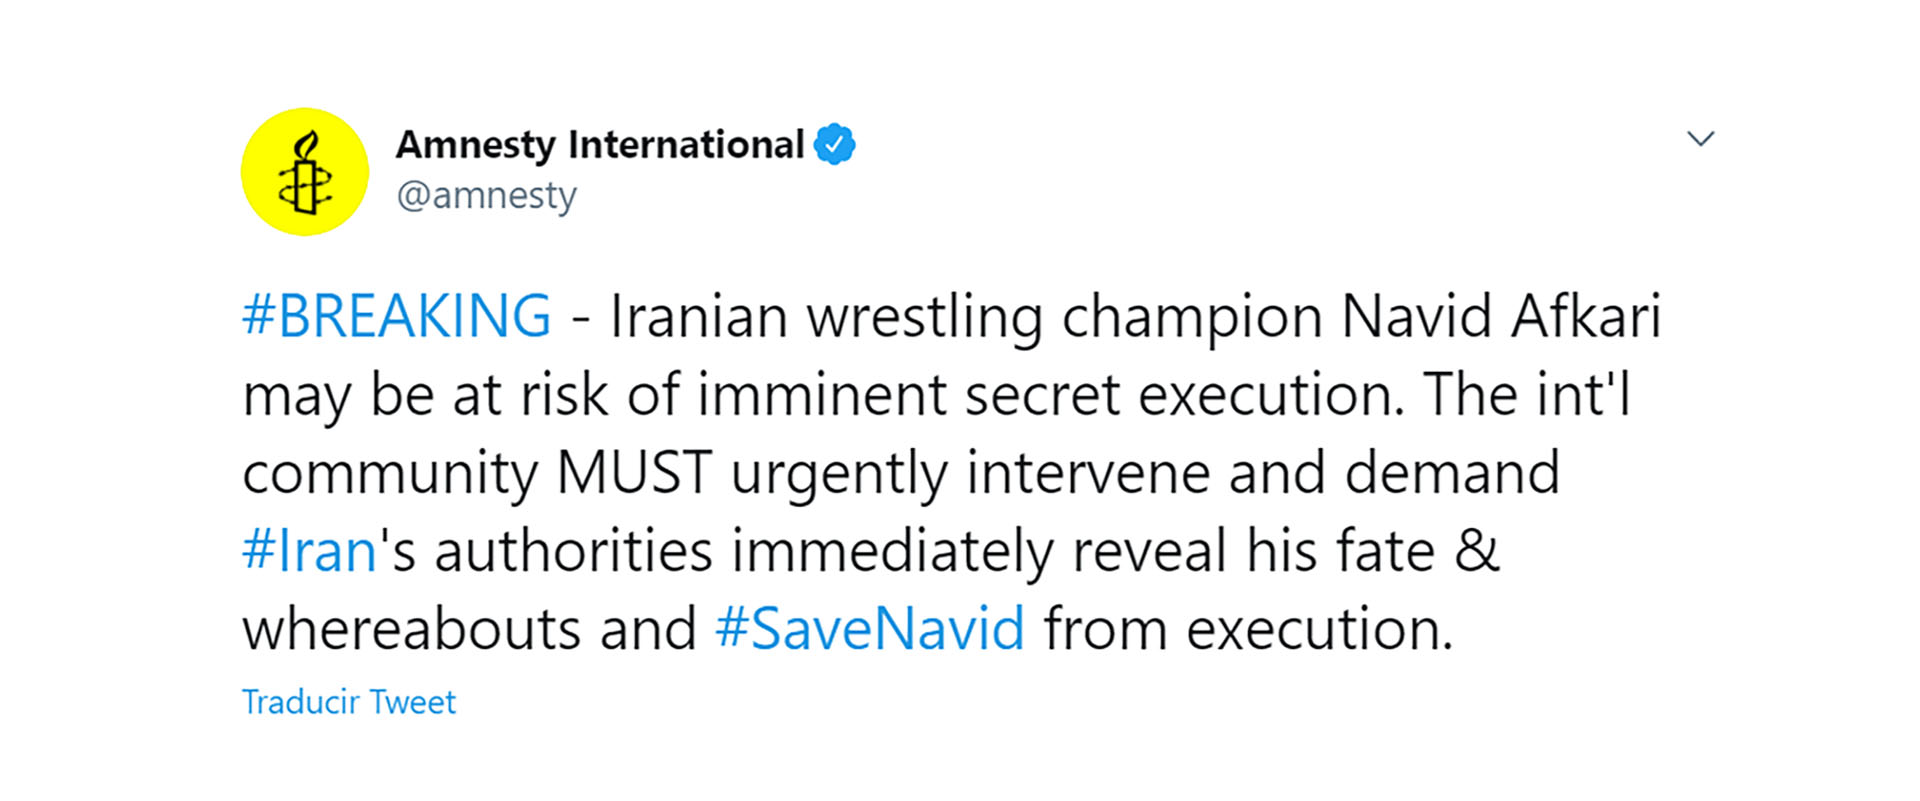 Amnistía Internacional había manifestado su preocupación. "El campeón de lucha iraní Navid Afkari puede estar en riesgo de ejecución secreta inminente. La comunidad internacional DEBE intervenir urgentemente", había expresado en las últimas horas